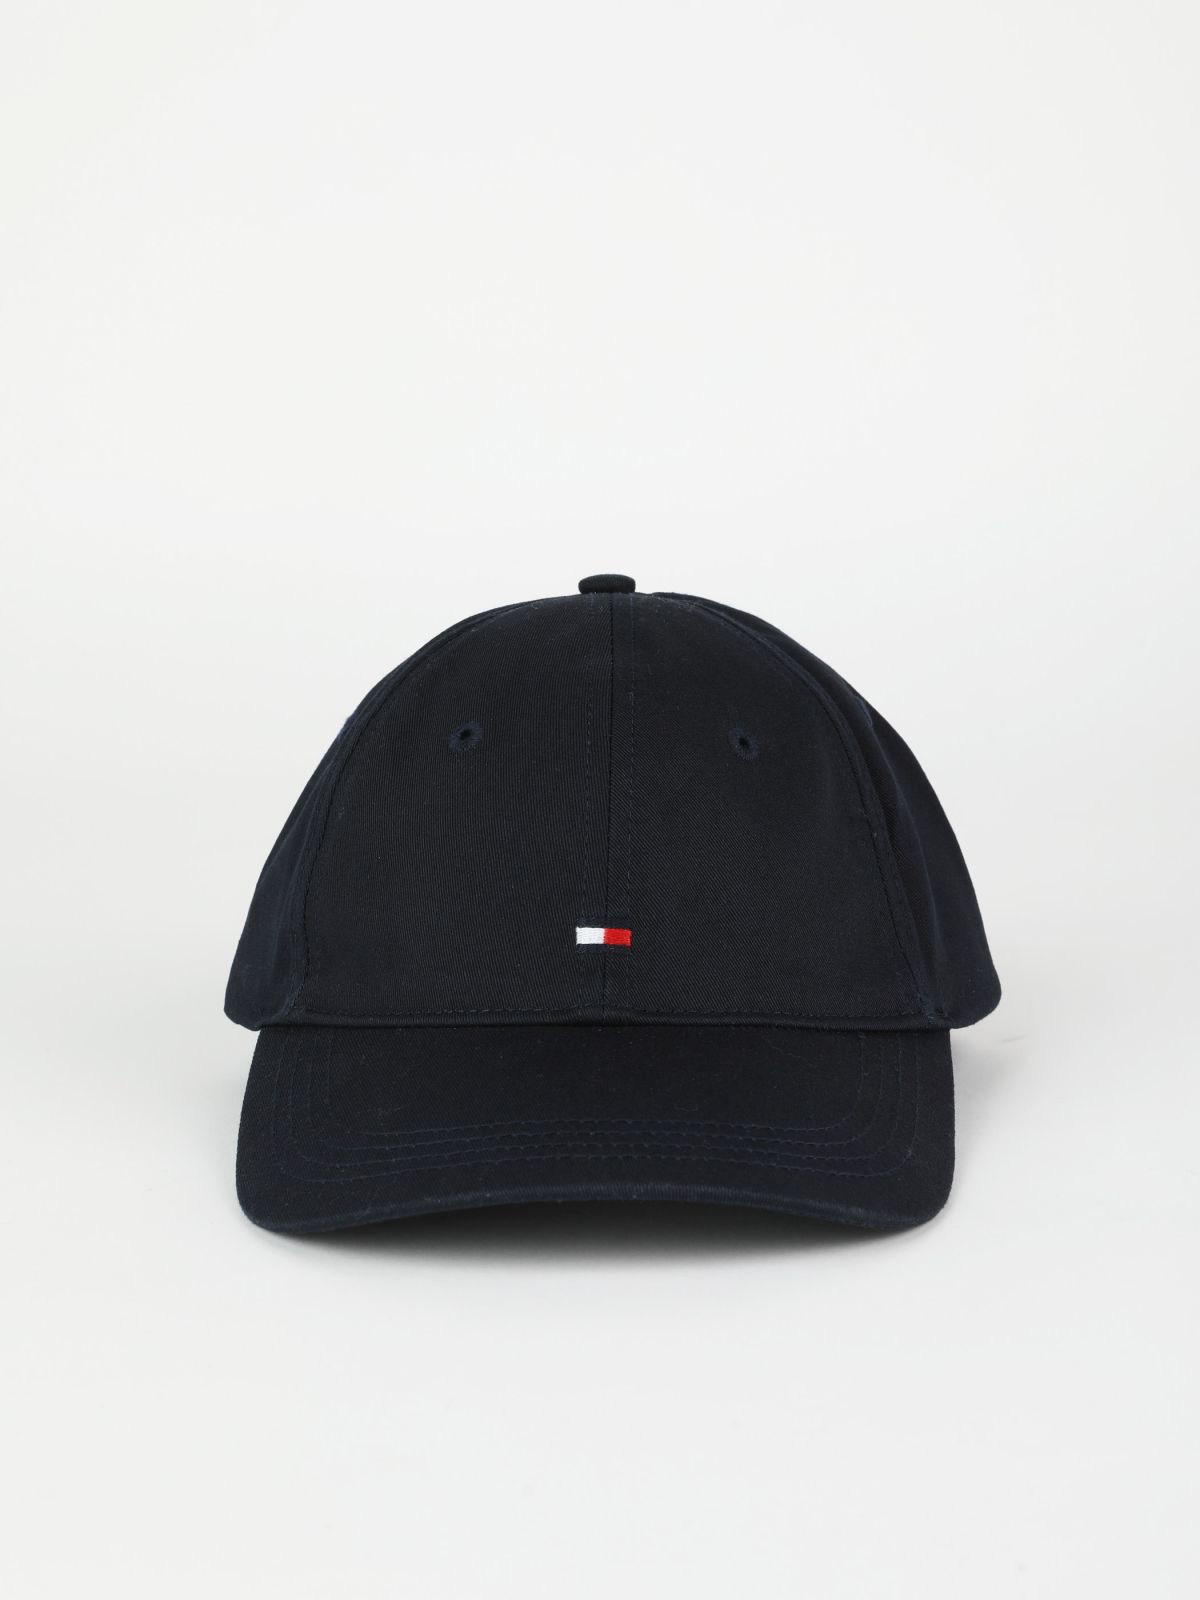  כובע מצחייה לוגו / נשים של TOMMY HILFIGER